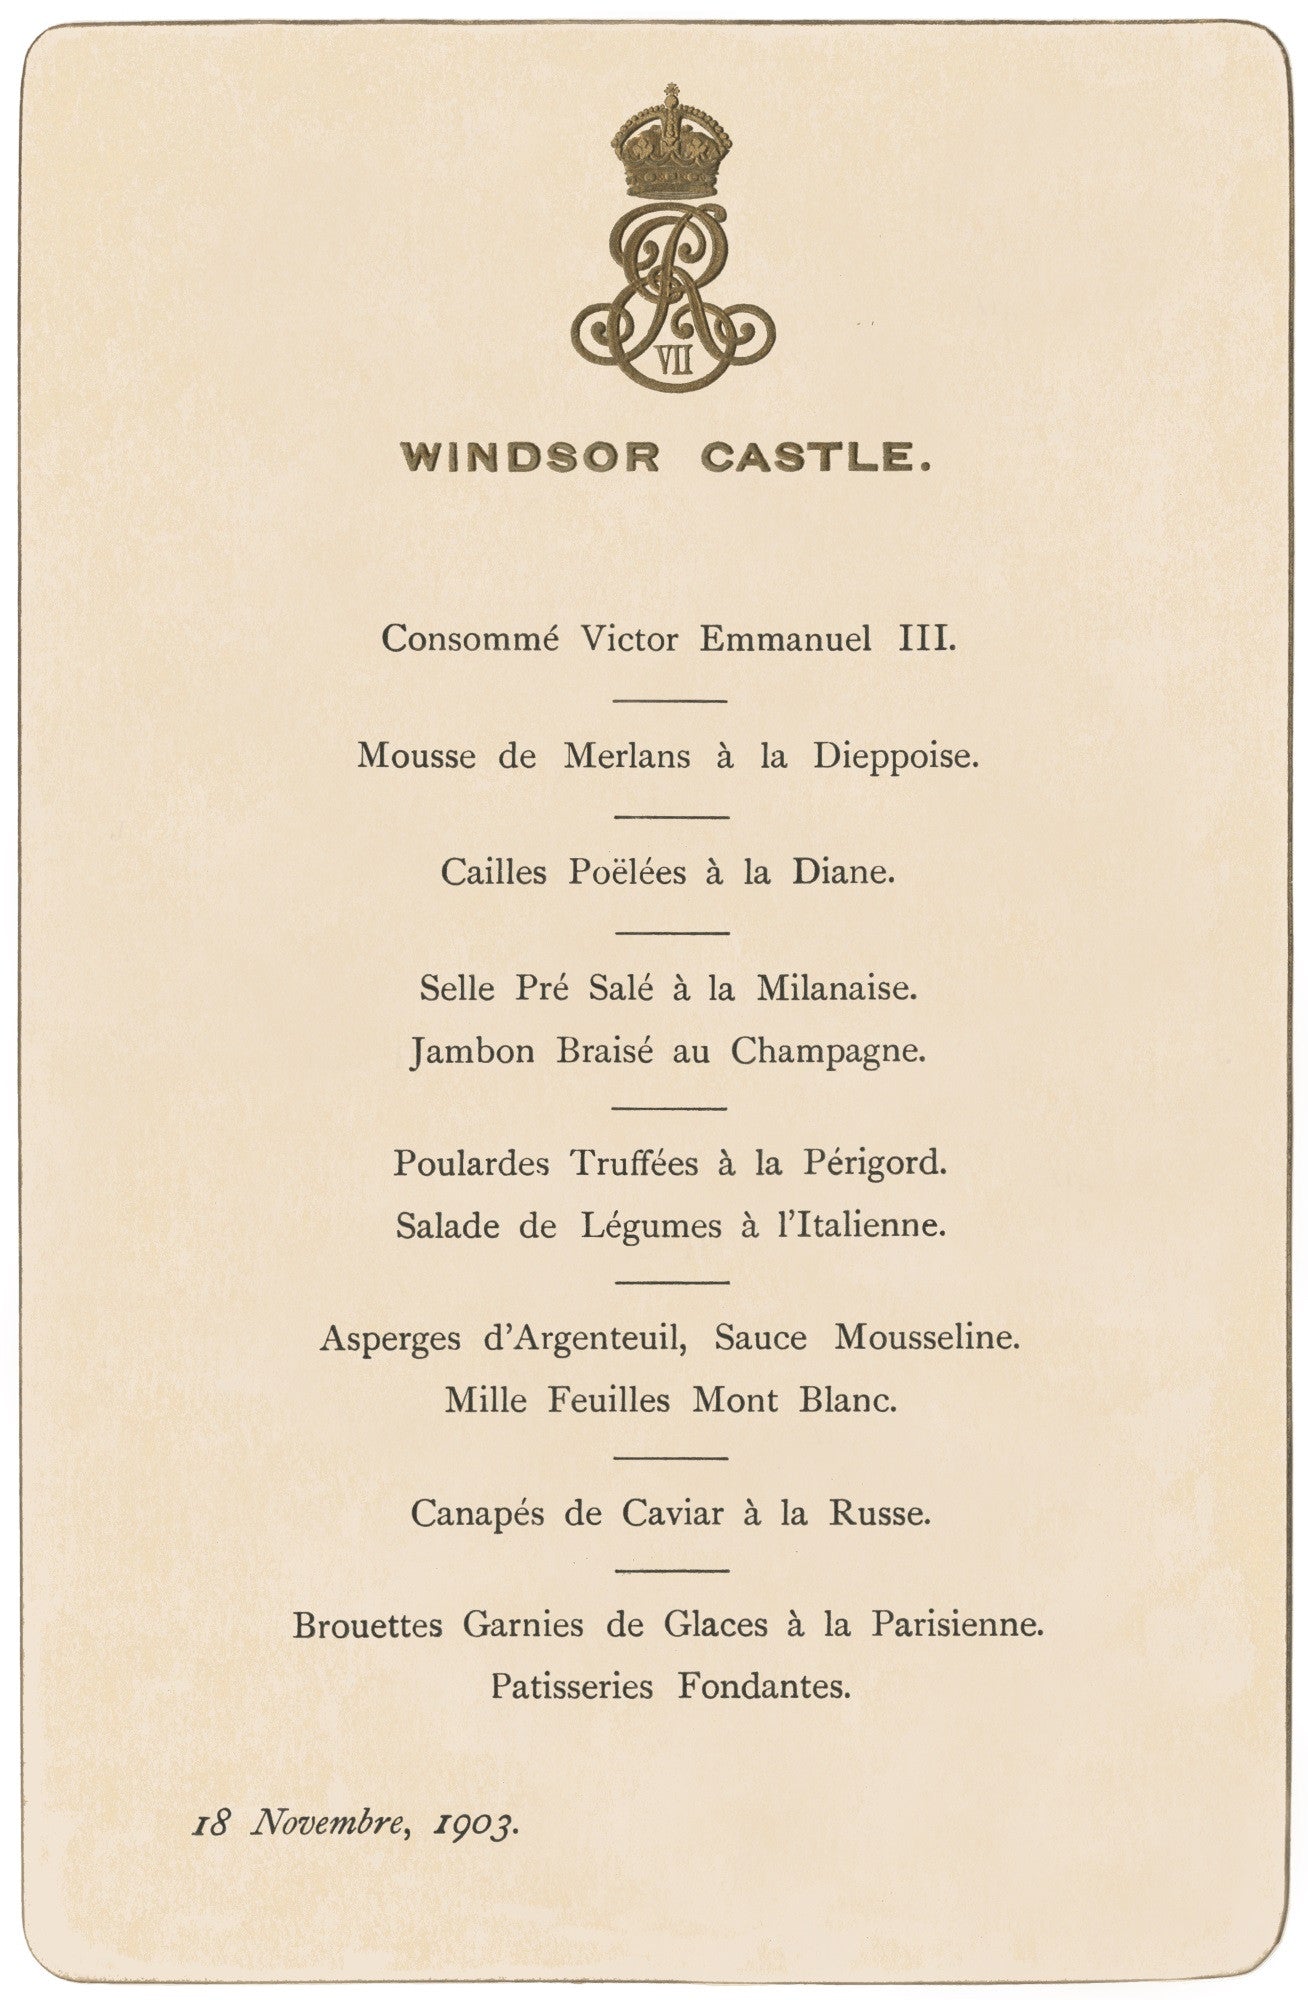 Windsor Castle Lunch November 18 1903 Menu Art